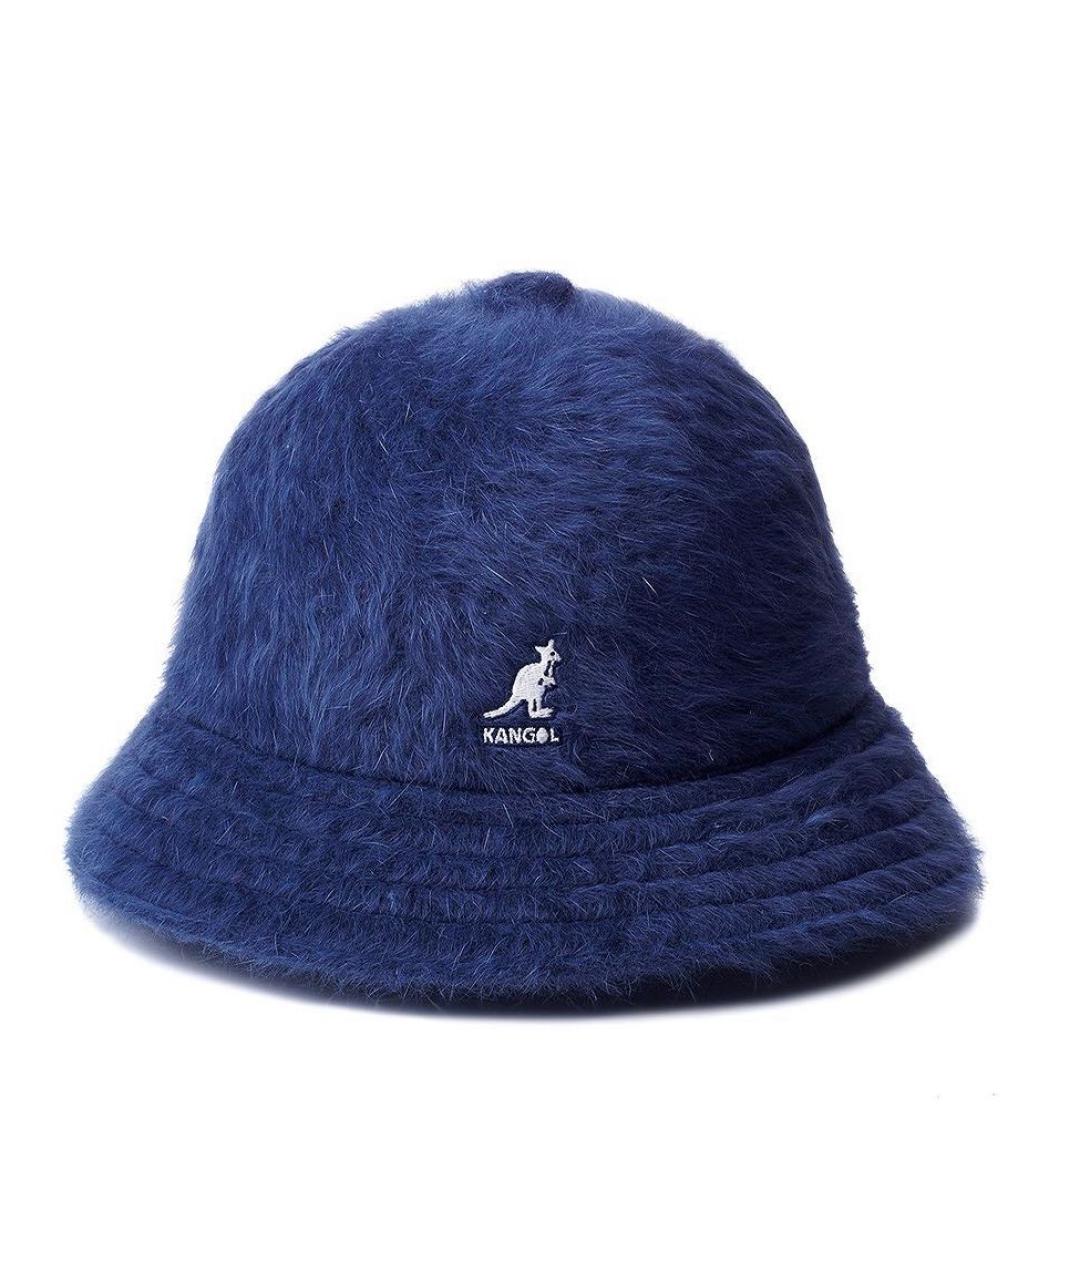 Kangol Темно-синяя шляпа, фото 1